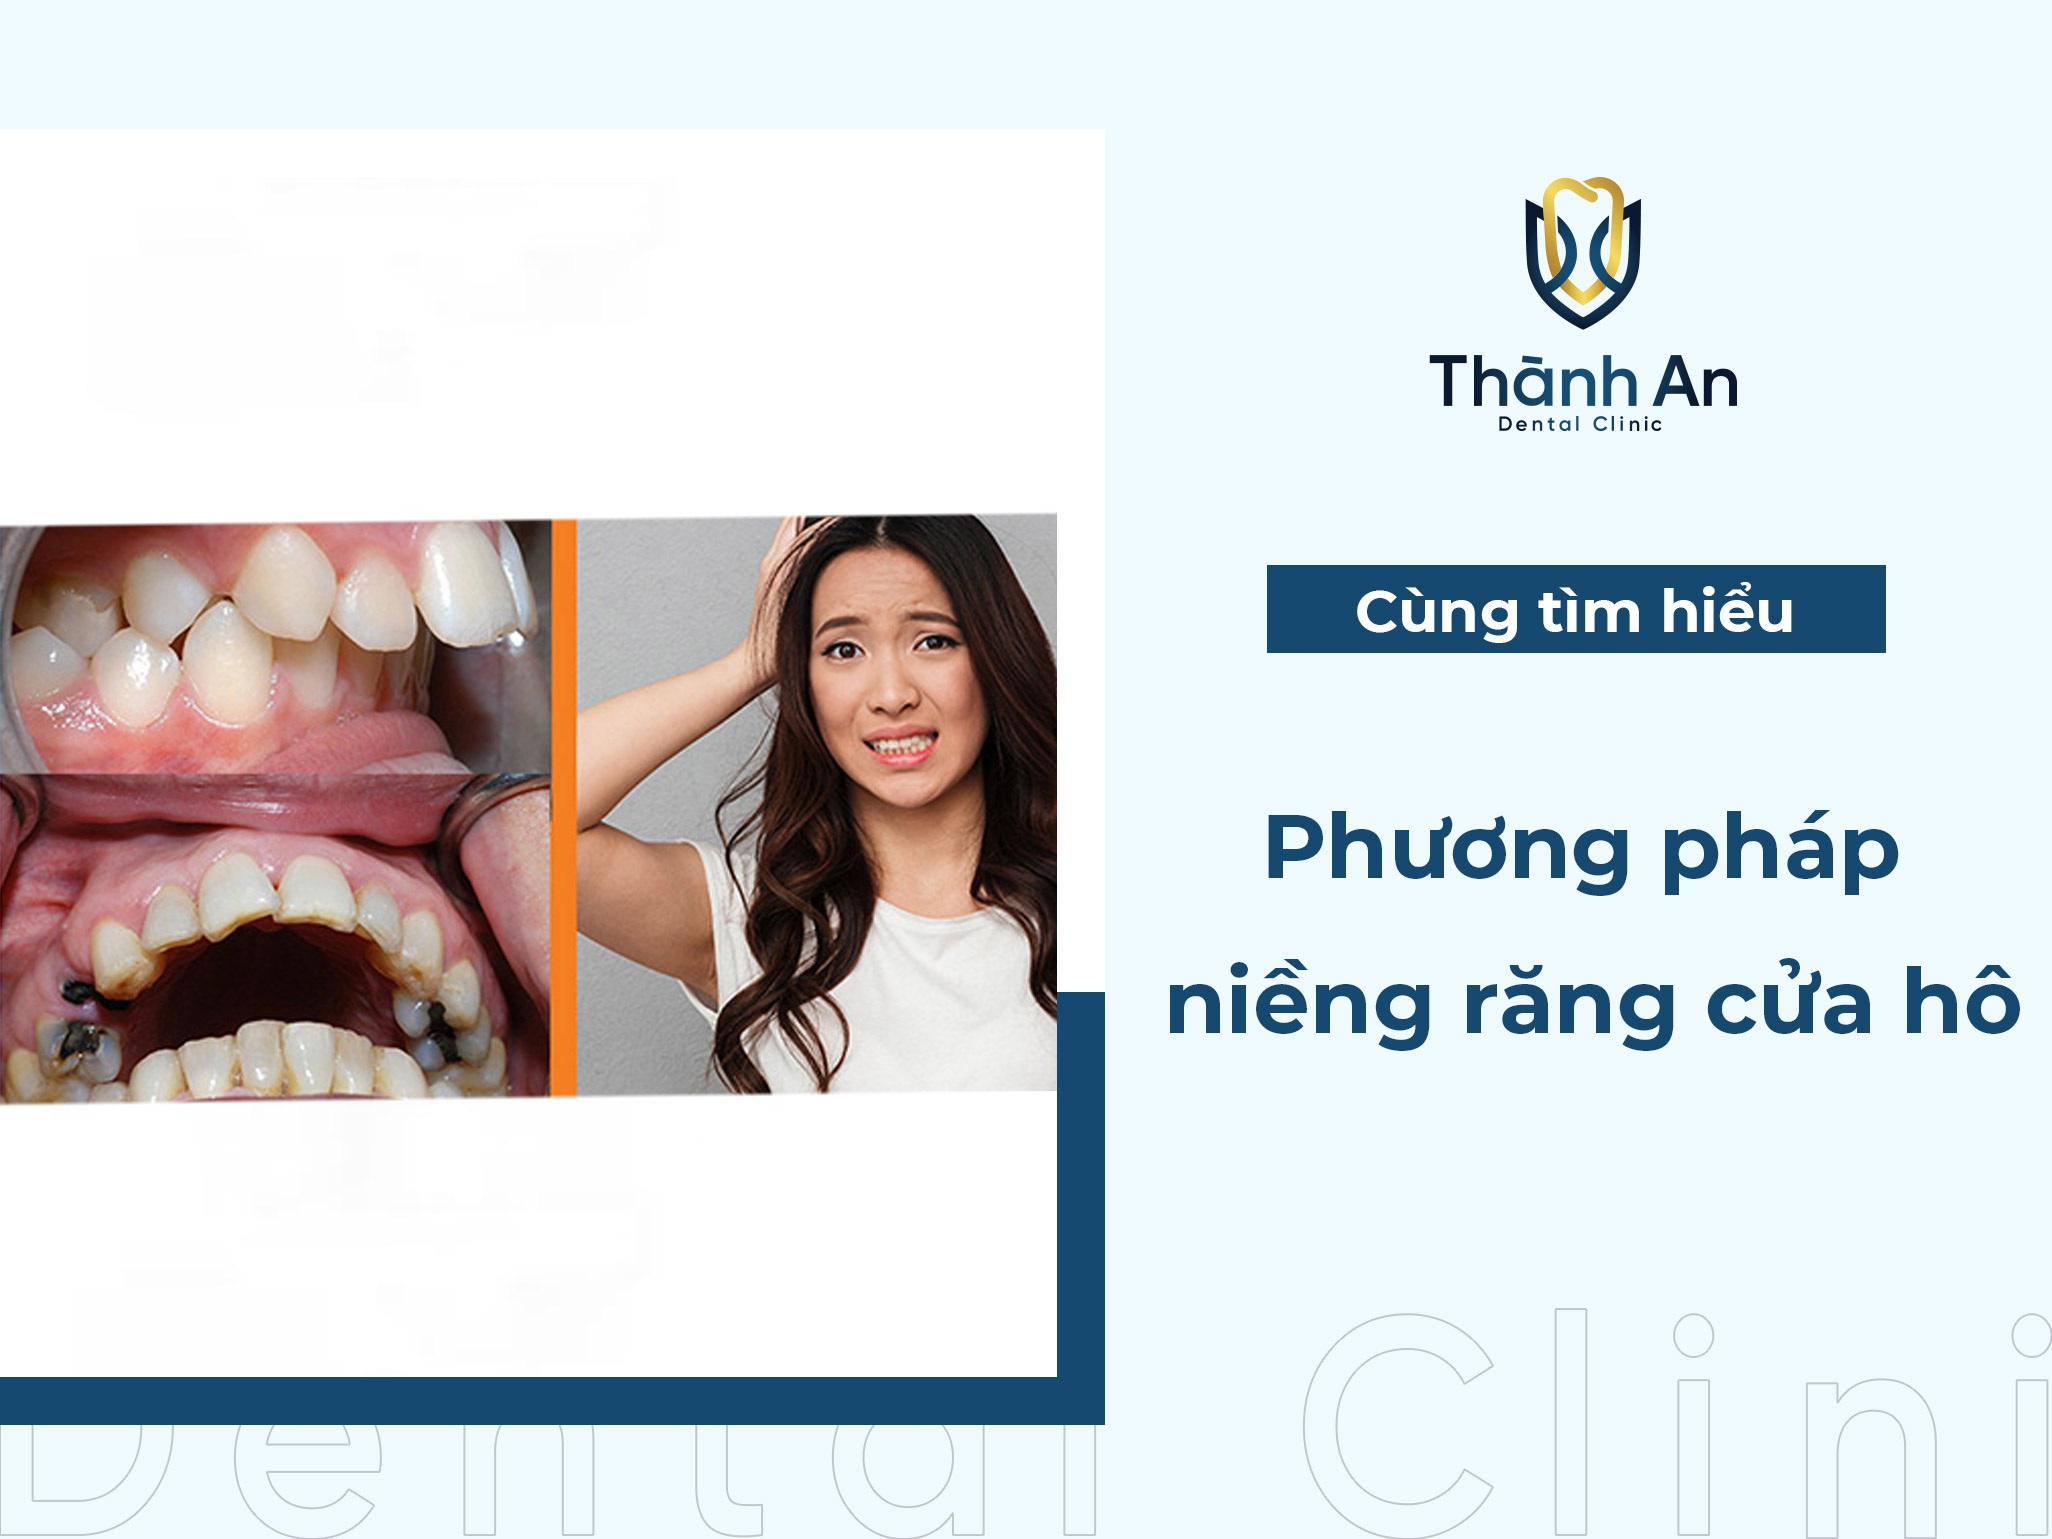 Niềng răng cửa hô: Phương pháp hiệu quả tối ưu thời gian chỉnh nha